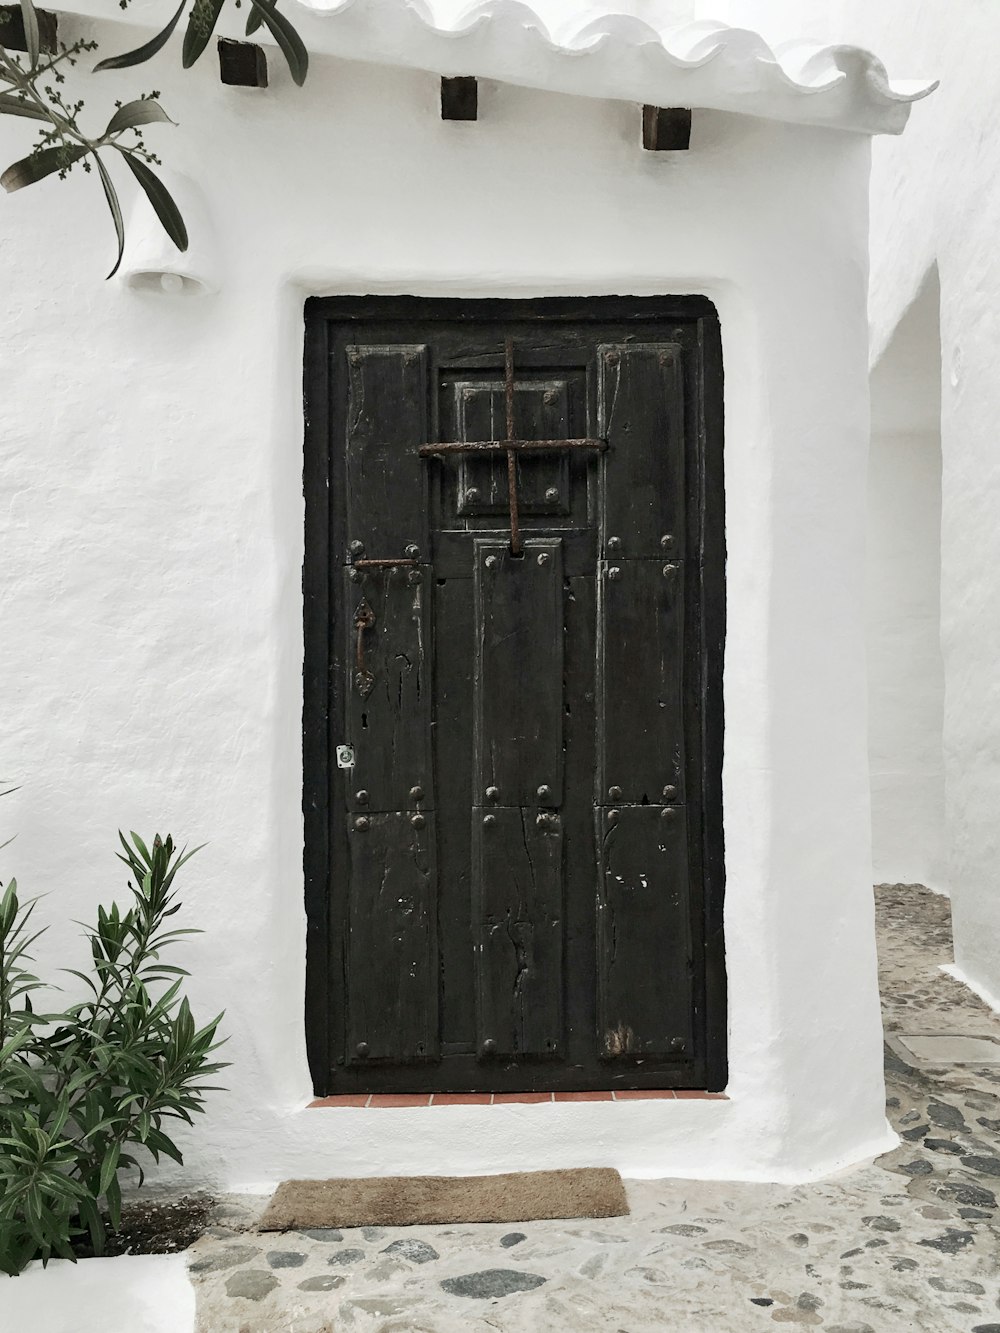 edifício branco com porta de madeira preta fechada